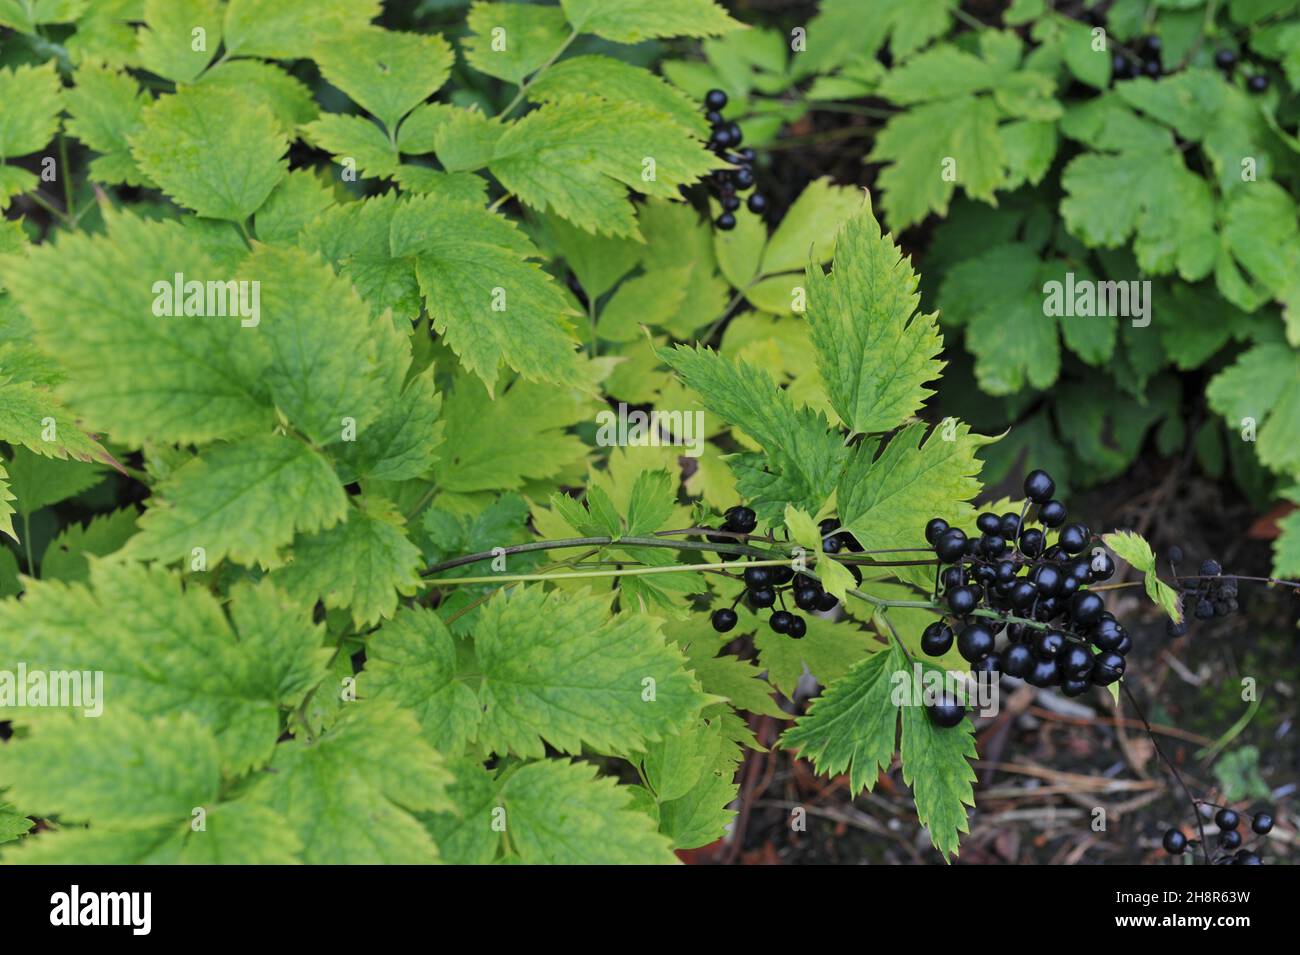 Black glossy baneberry (Actaea spicata) fruits in a garden in September Stock Photo